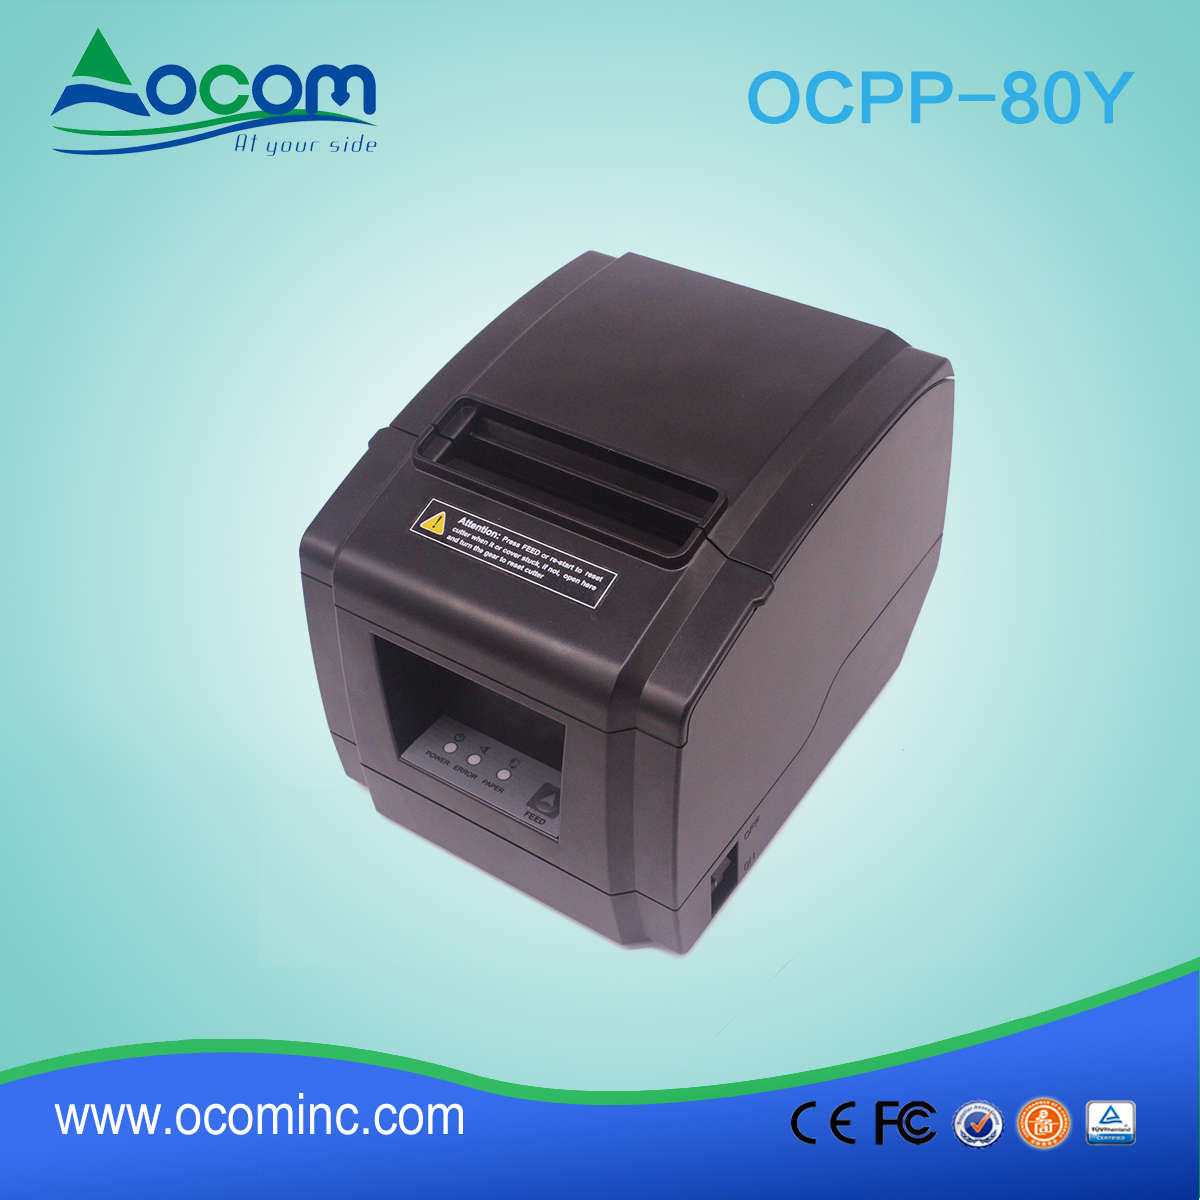 Новая модель ОКПП-80и 80 мм тепловой чековый принтер с автоматическим резчиком